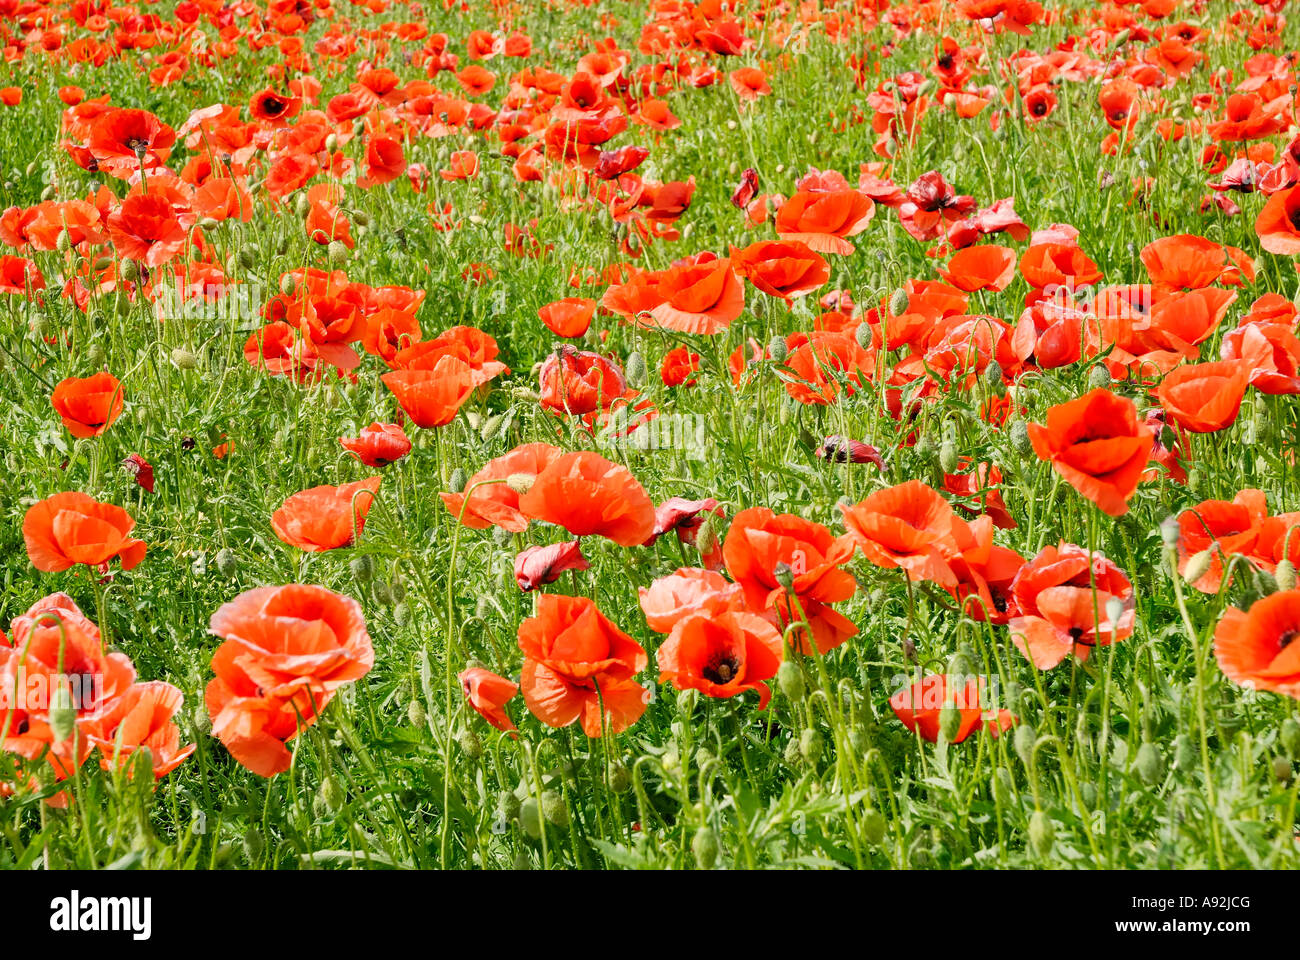 Campo de barbecho está jalonada por rojo amapola, Papaver rhoeas flores L; Papaveraceae se mecen en el viento Foto de stock